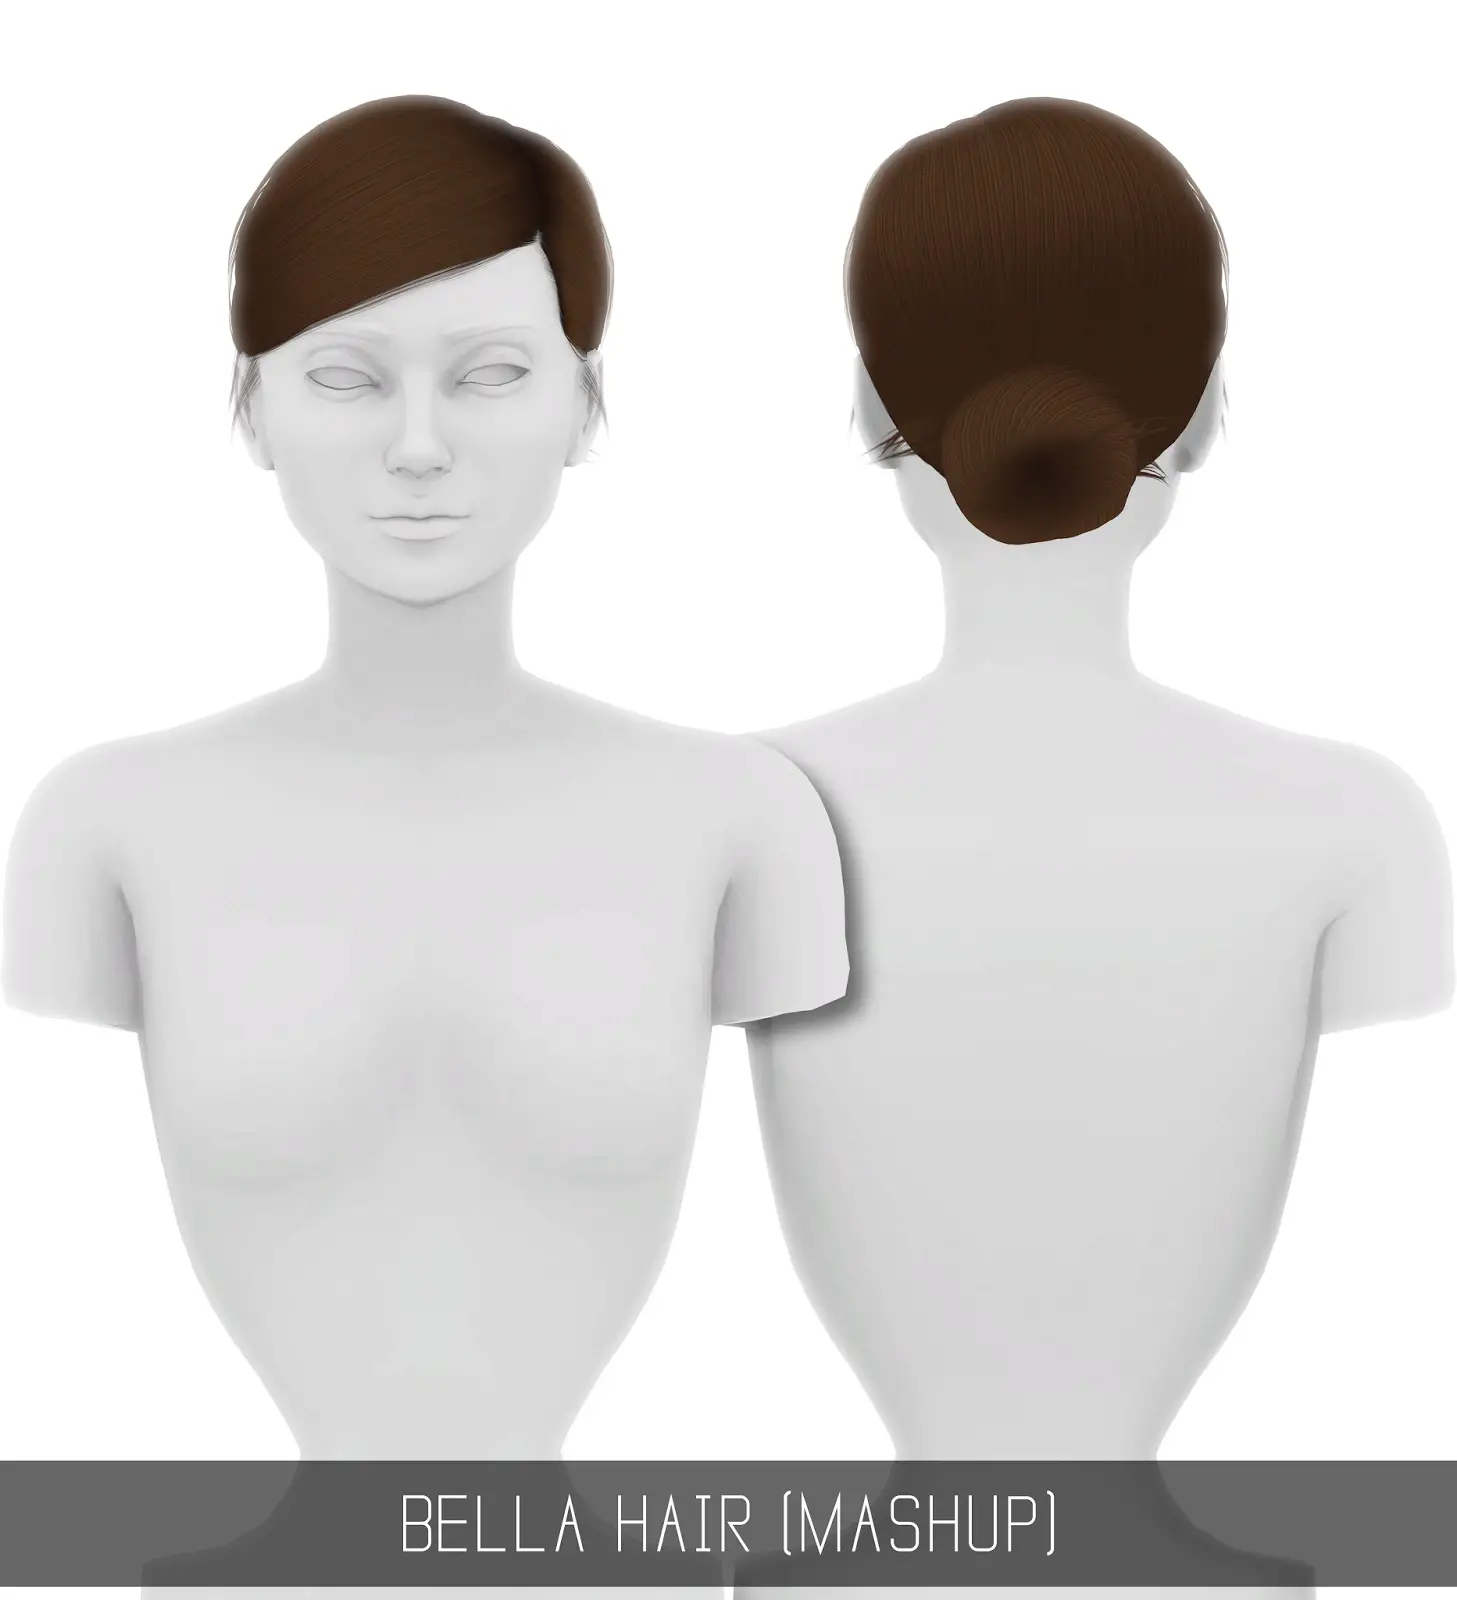 Sims 4 Hairs ~ Simpliciaty: Bella hair